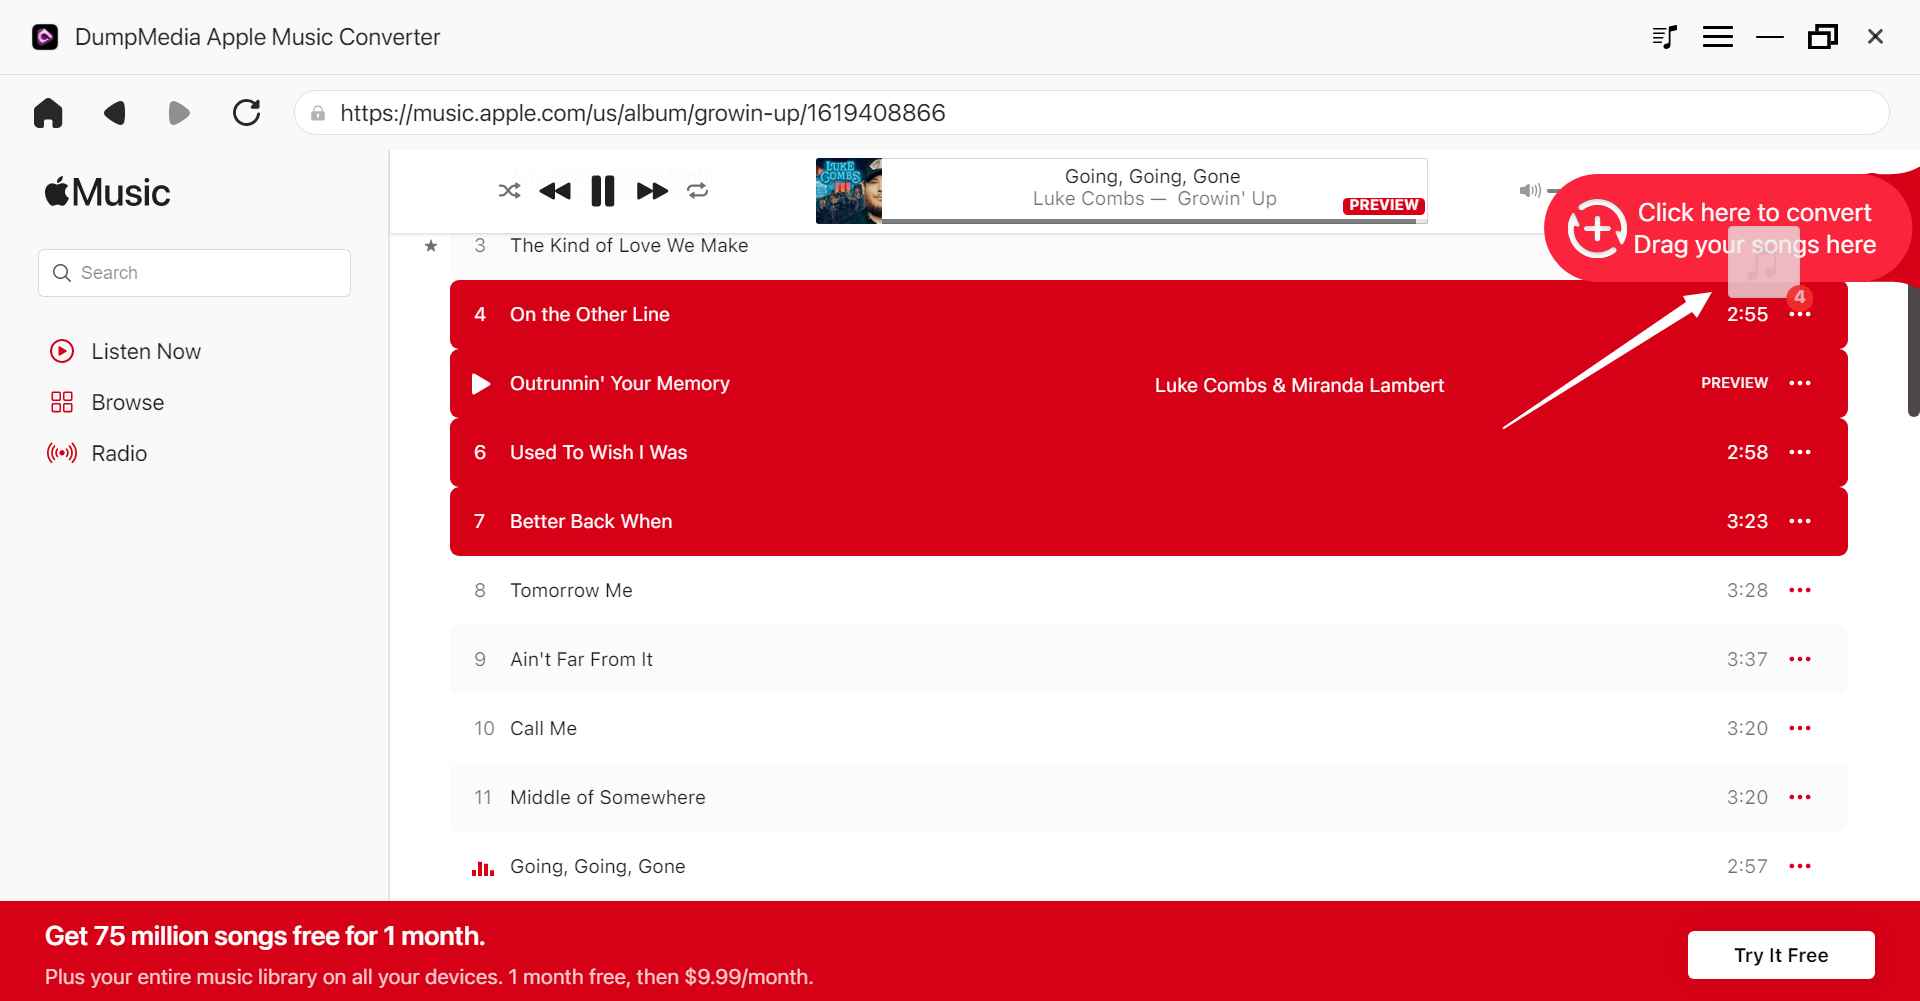 أفضل برنامج لتحويل موسيقى Apple: DumpMedia Apple Music Converter - إضافة ملفات